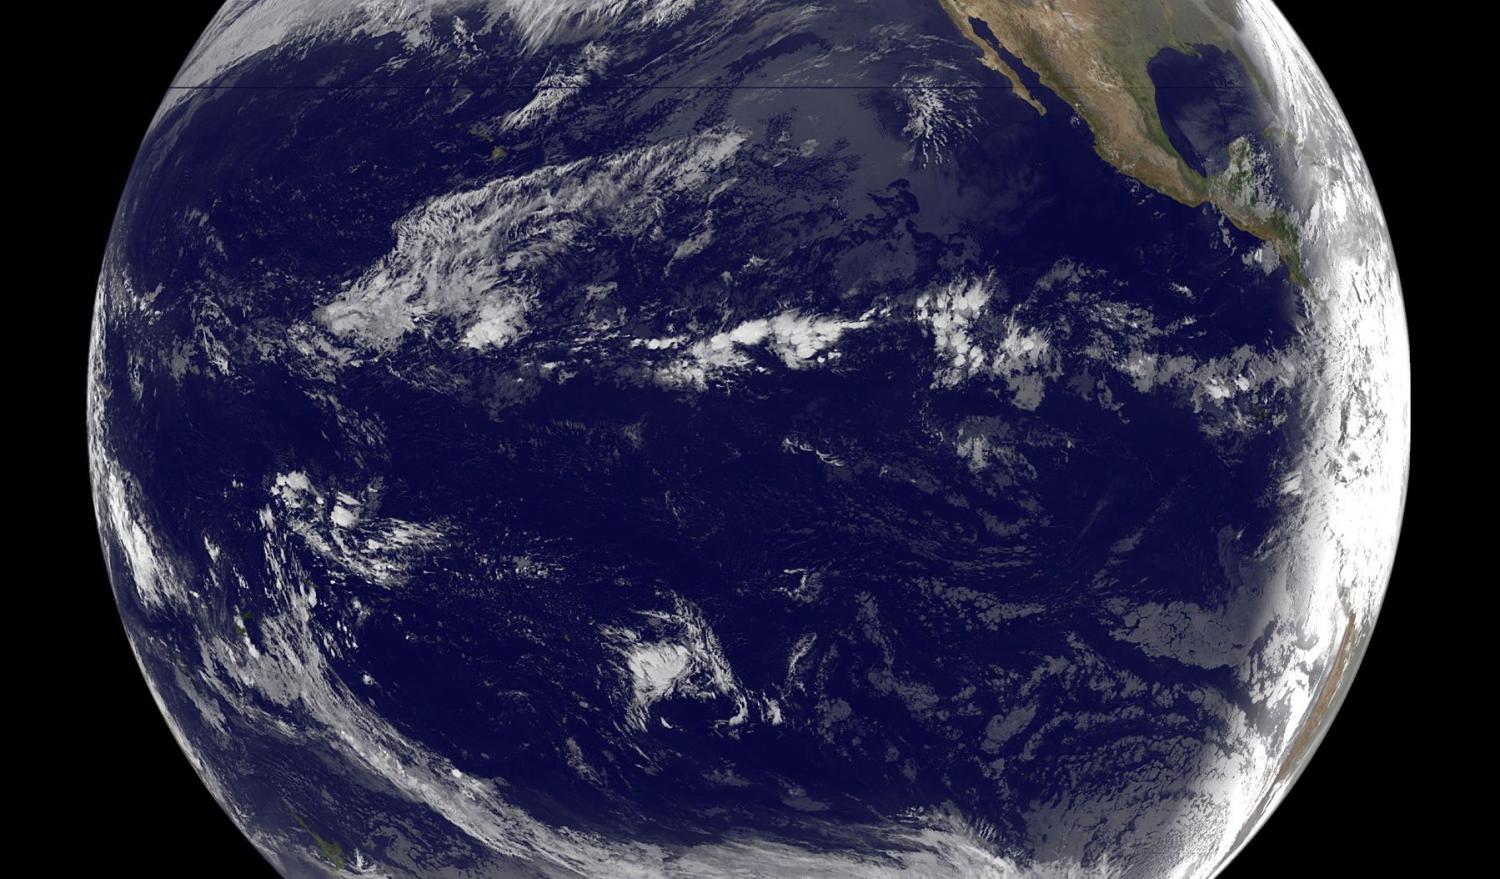 Pacific Ocean basin (Photo: NASA Goddard Space Flight/Flickr)